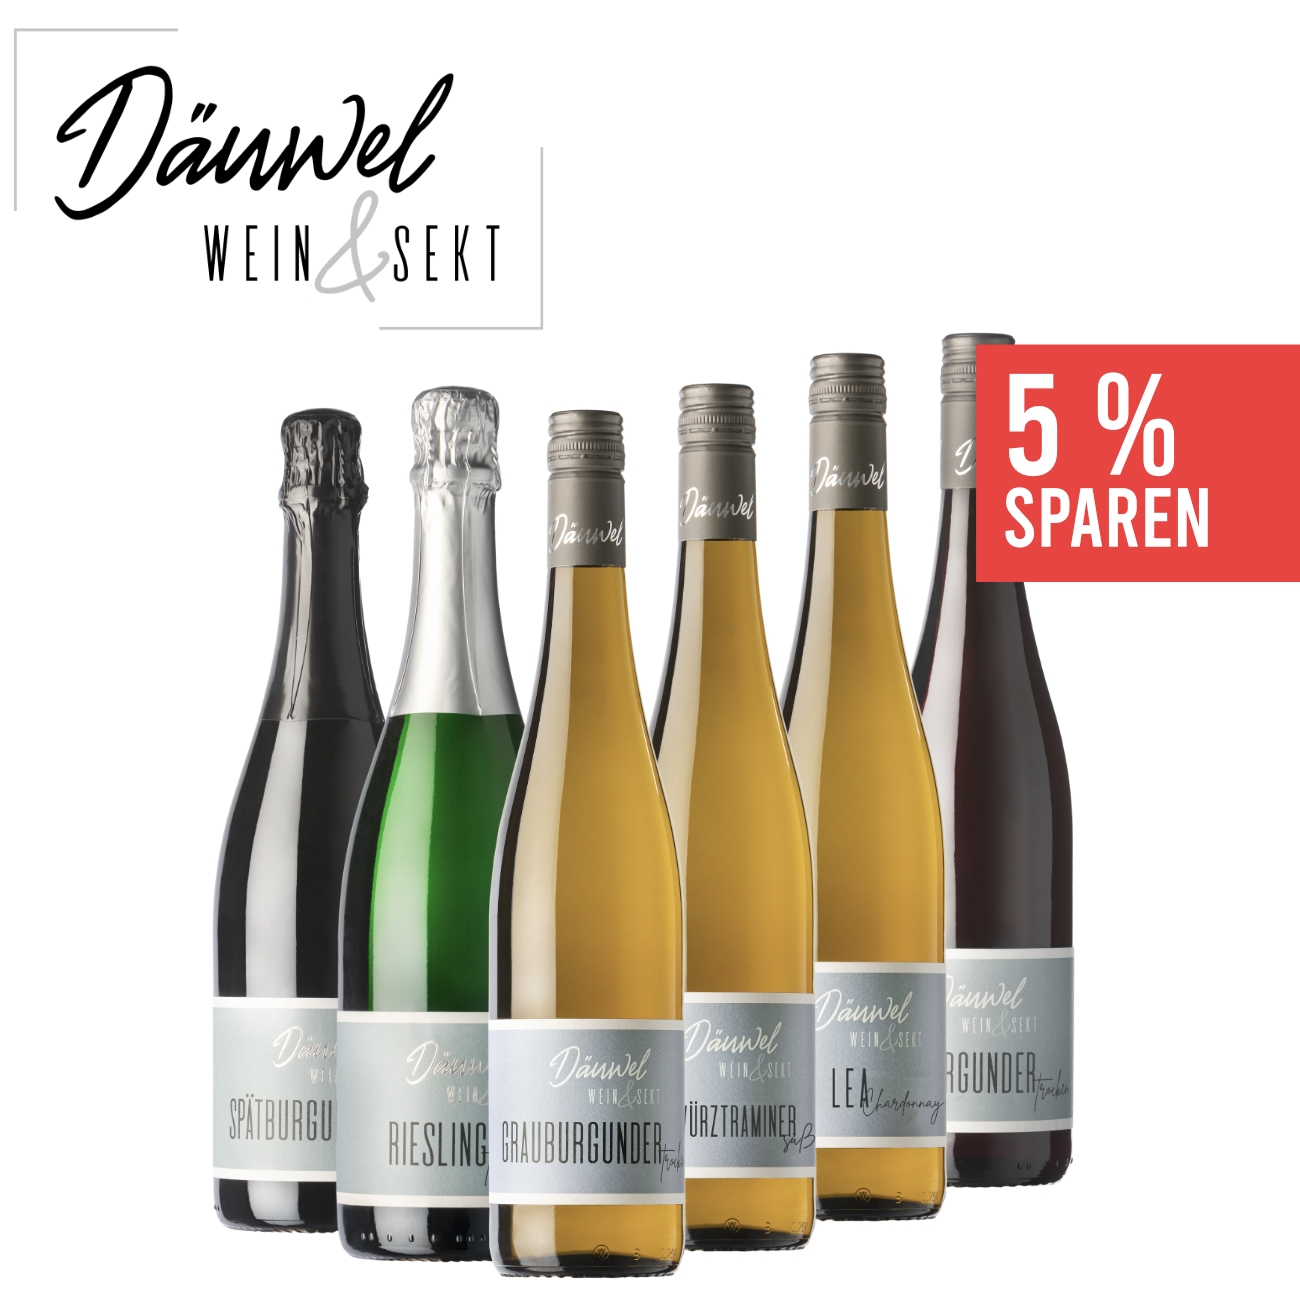 Däuwel's Probierpaket 6 x 0,75 L - Wein & Sekt Däuwel